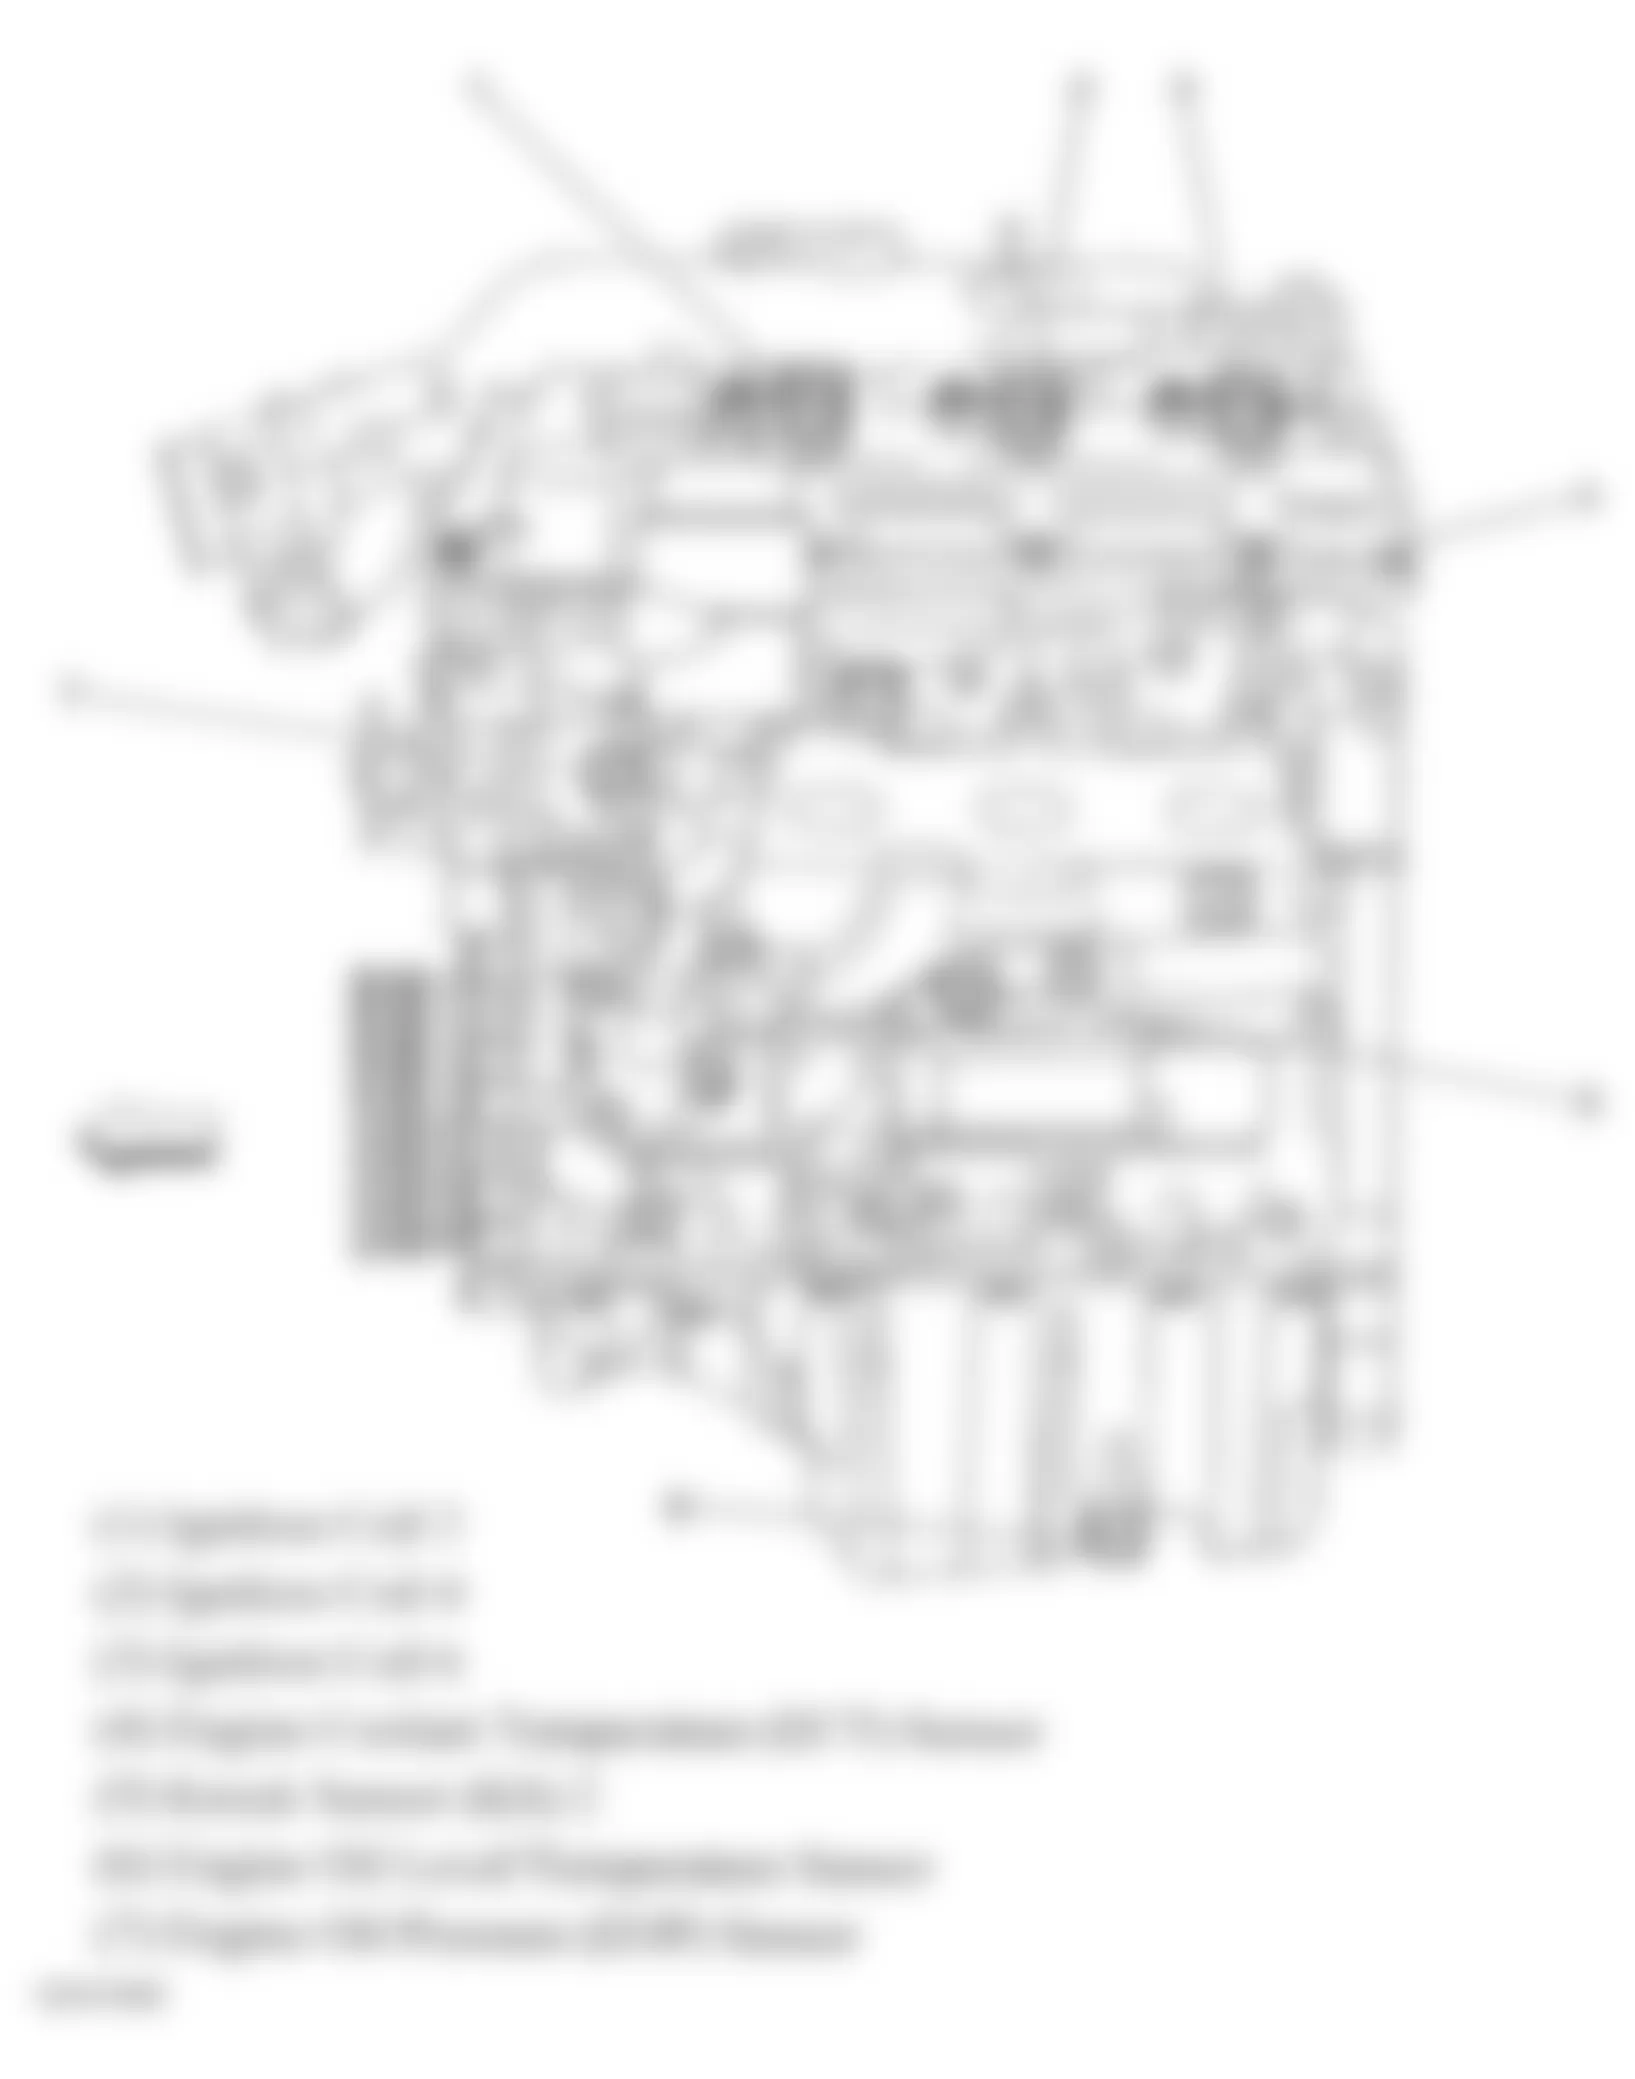 Buick Allure CXL 2006 - Component Locations -  Engine Controls Components (3.6L)